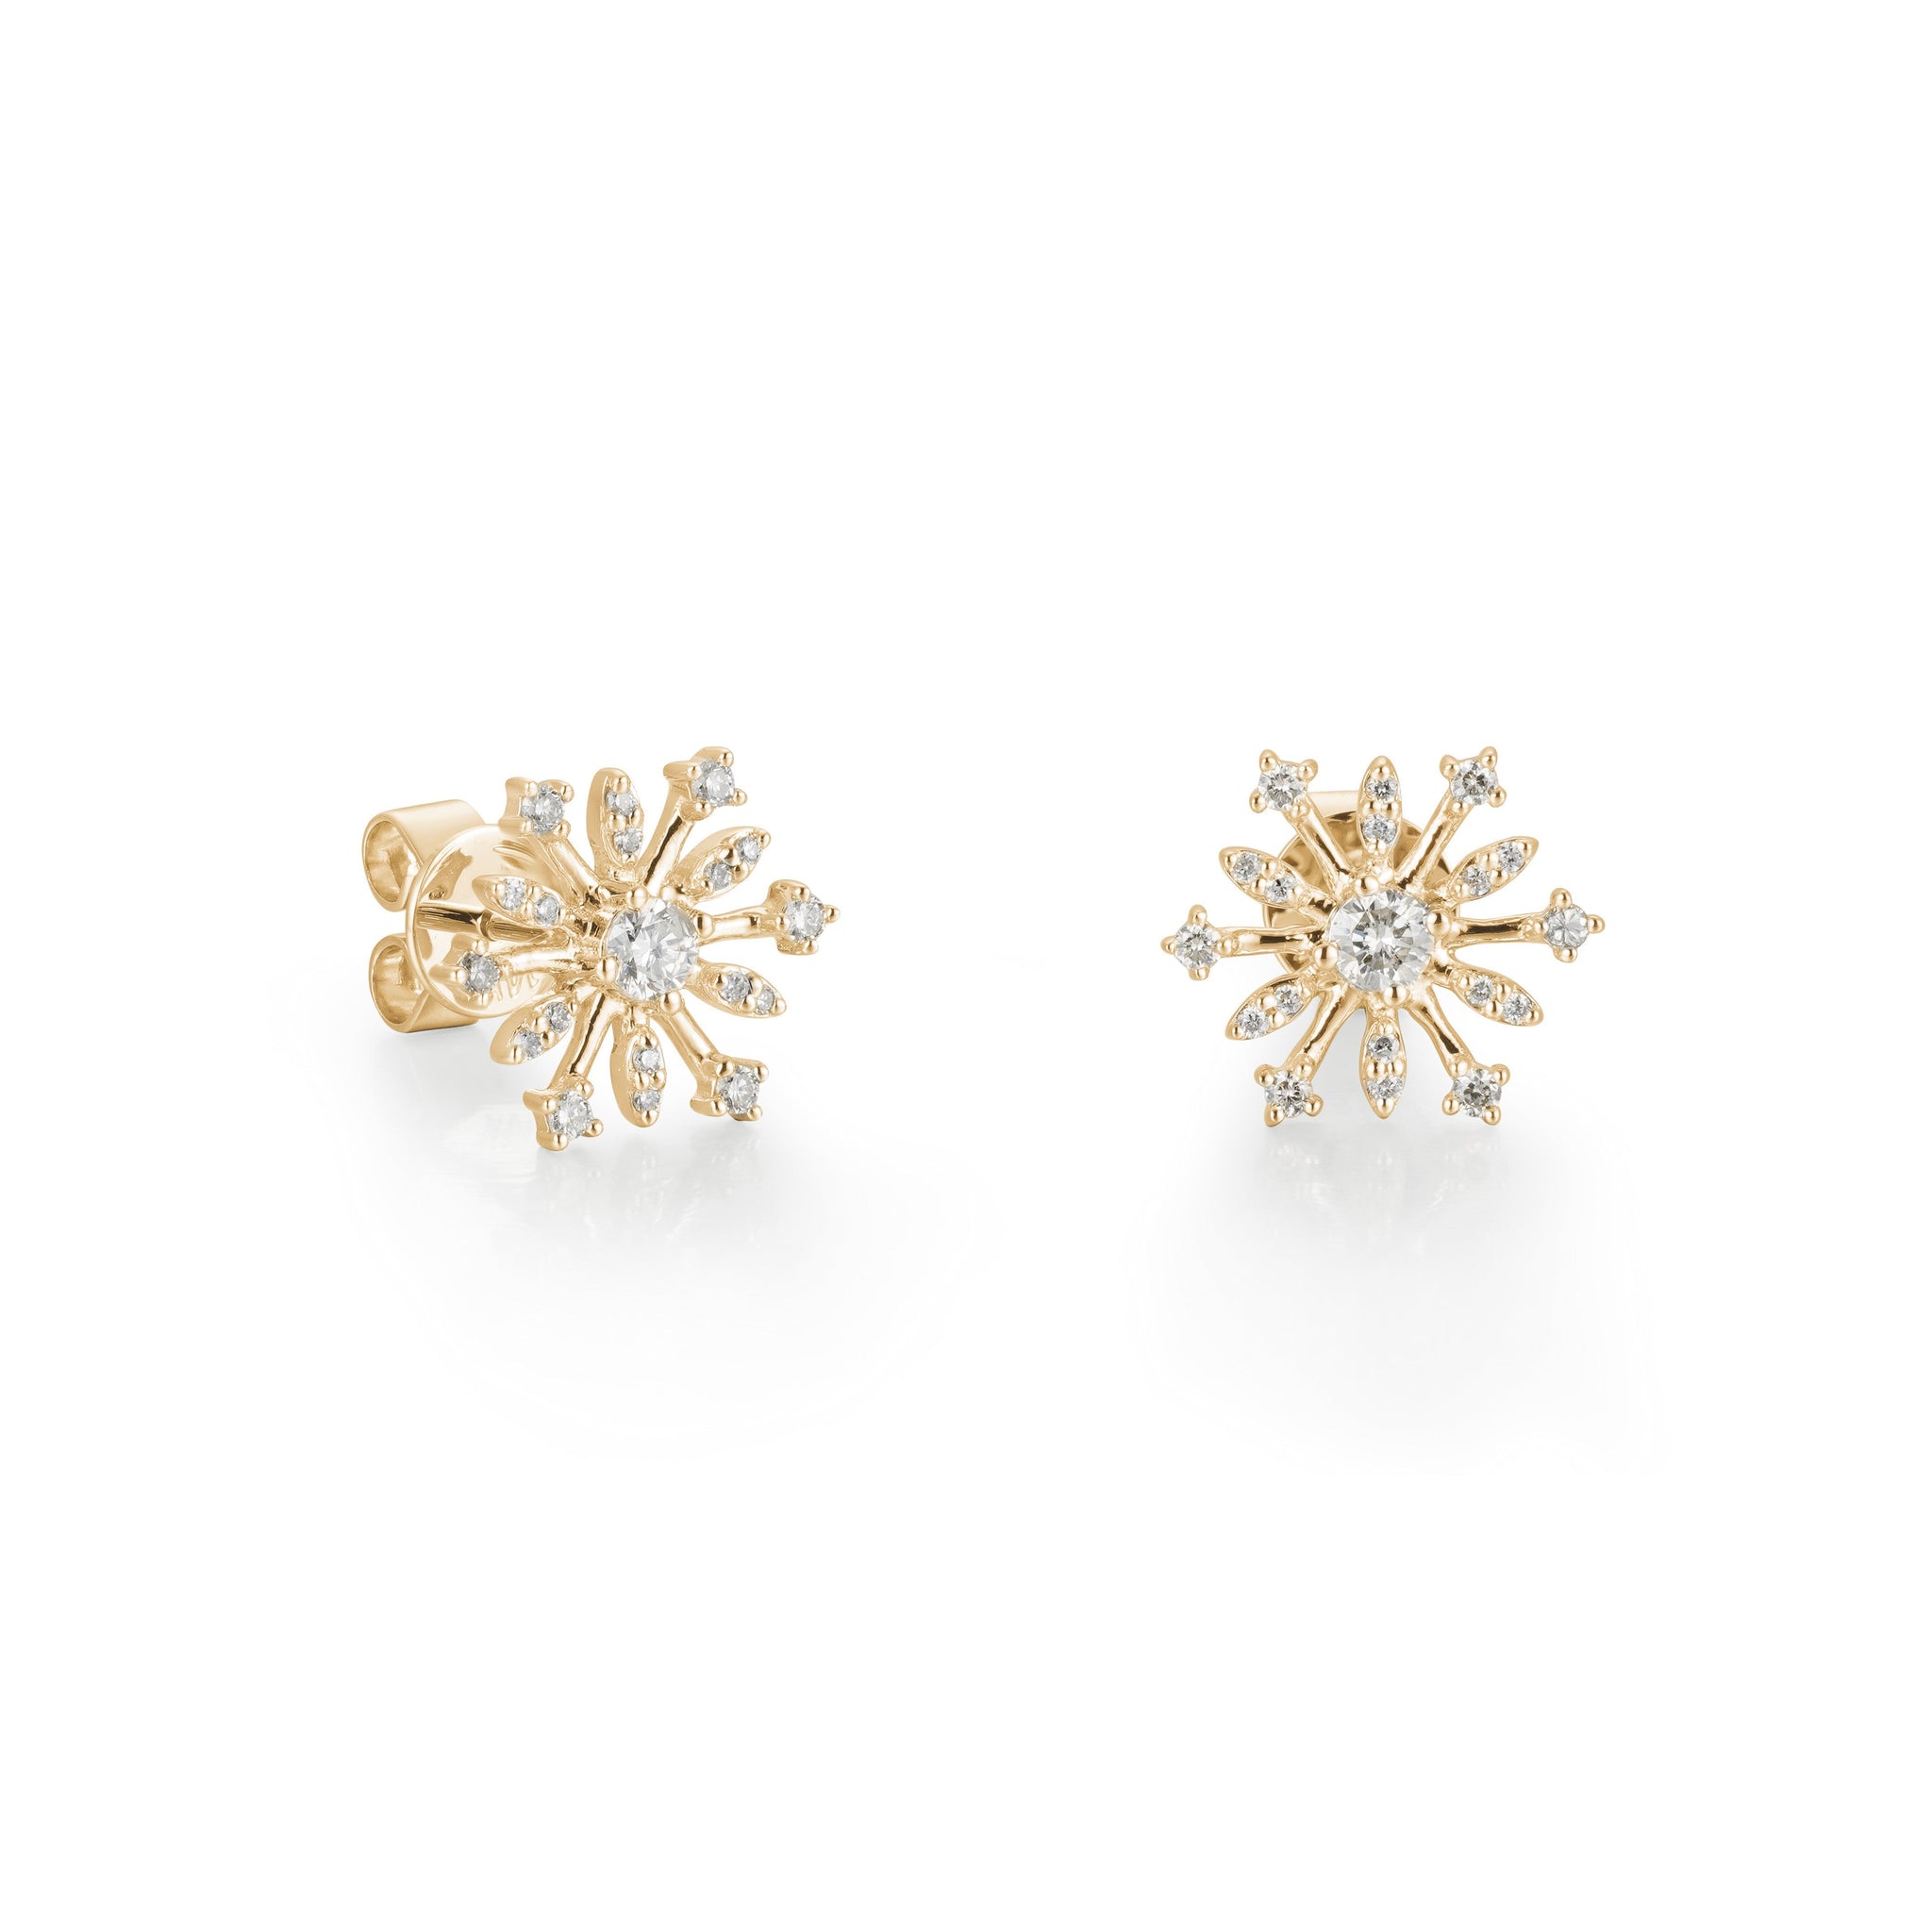 Icy Snowflakes Diamond Earrings